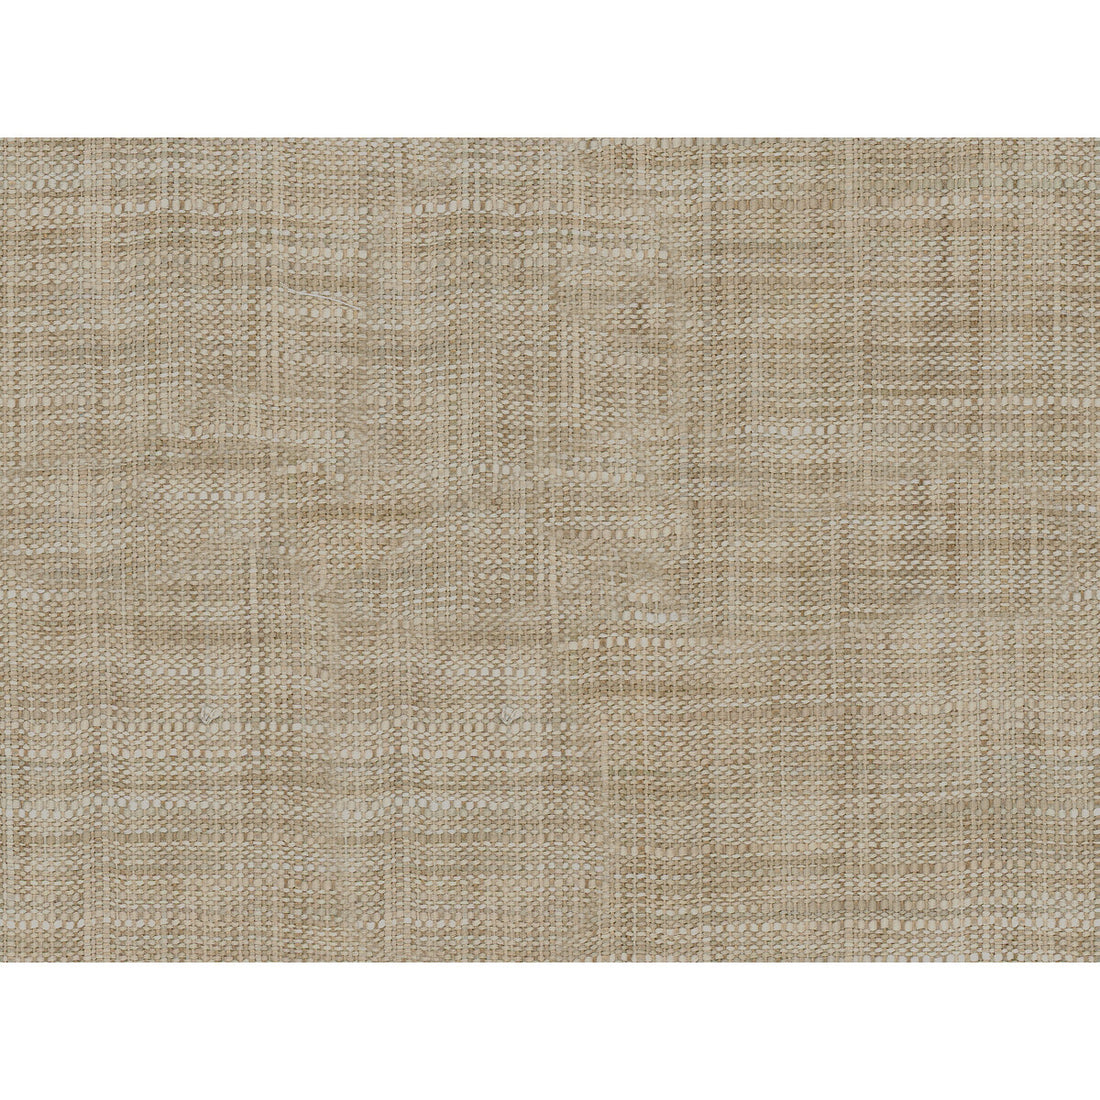 Kravet Basics fabric in 8813-6116 color - pattern 8813.6116.0 - by Kravet Basics